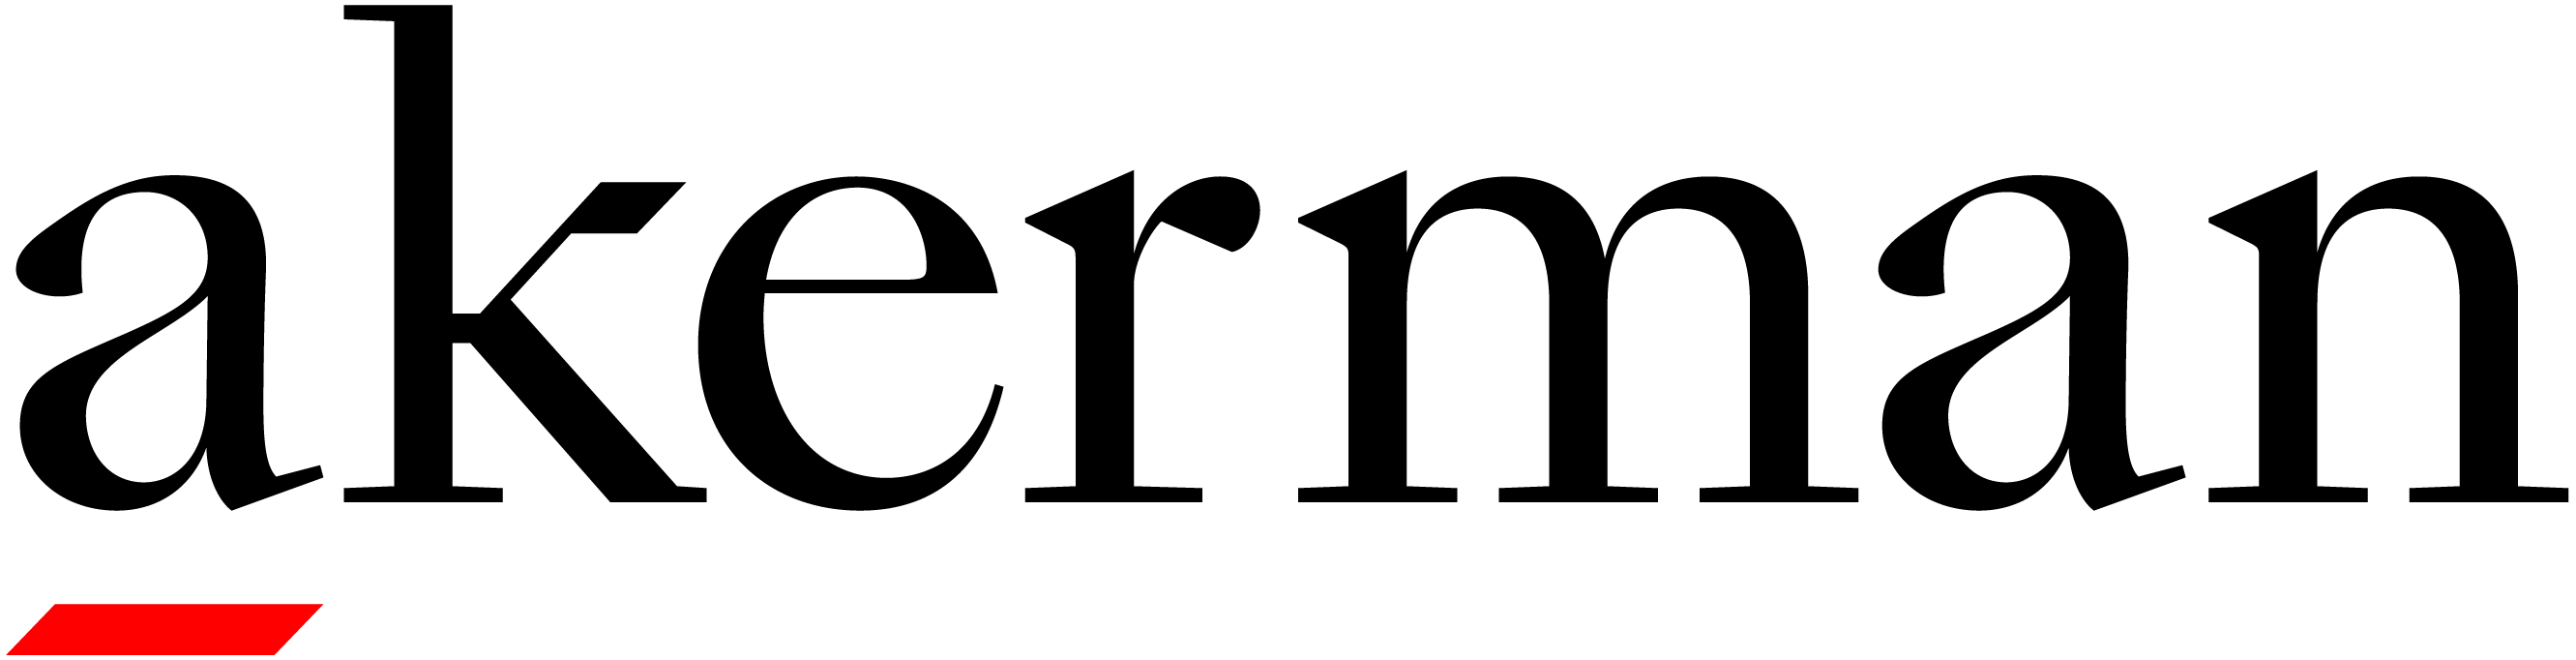 Akerman Logo